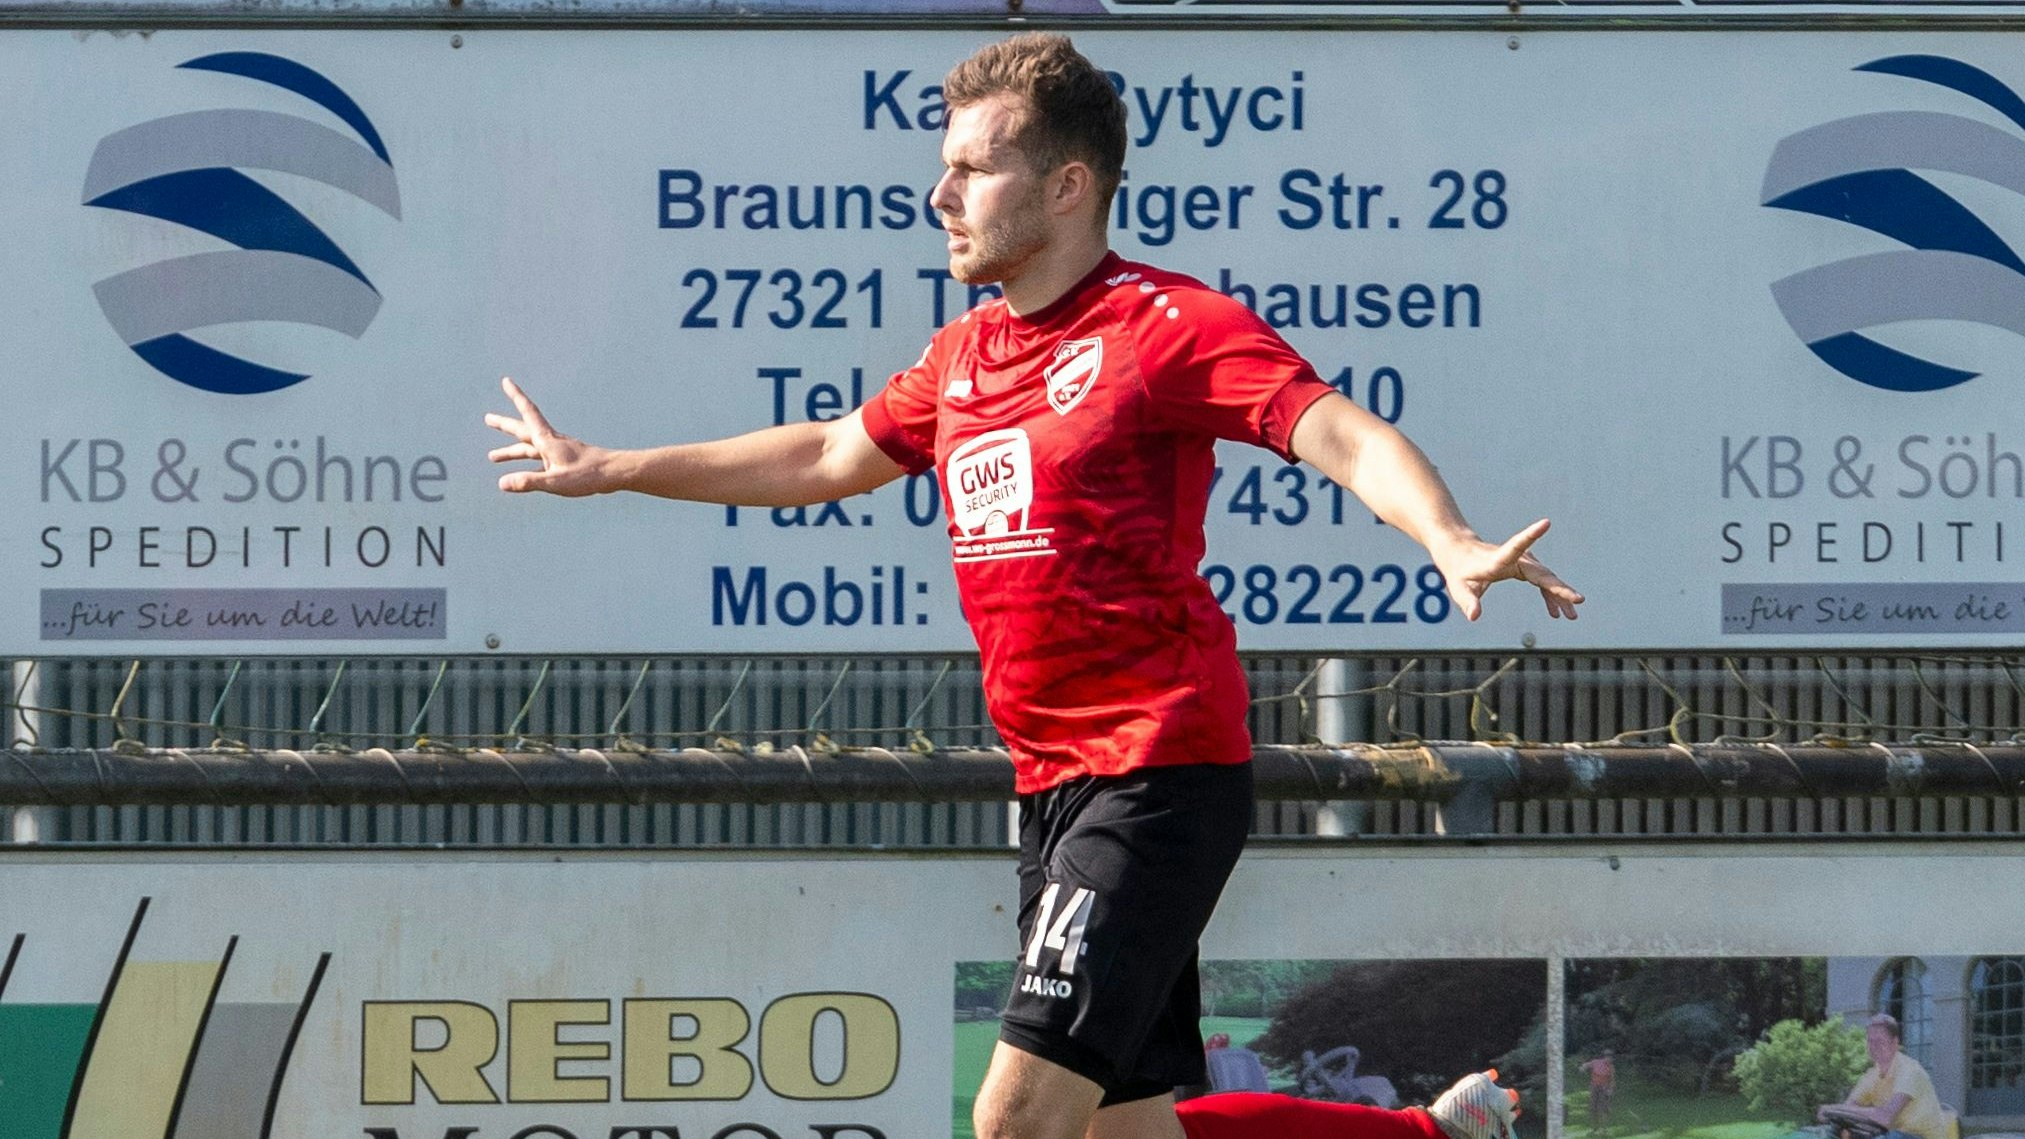 Trifft derzeit nach Belieben: Johannes „Jojo“ Bruns führt die Torjägerliste der Bezirksliga gemeinsam mit Hüsnü Deniz Ogur von BW Lohne II an. Beide erzielten 9 Treffer. Foto: Mentrup